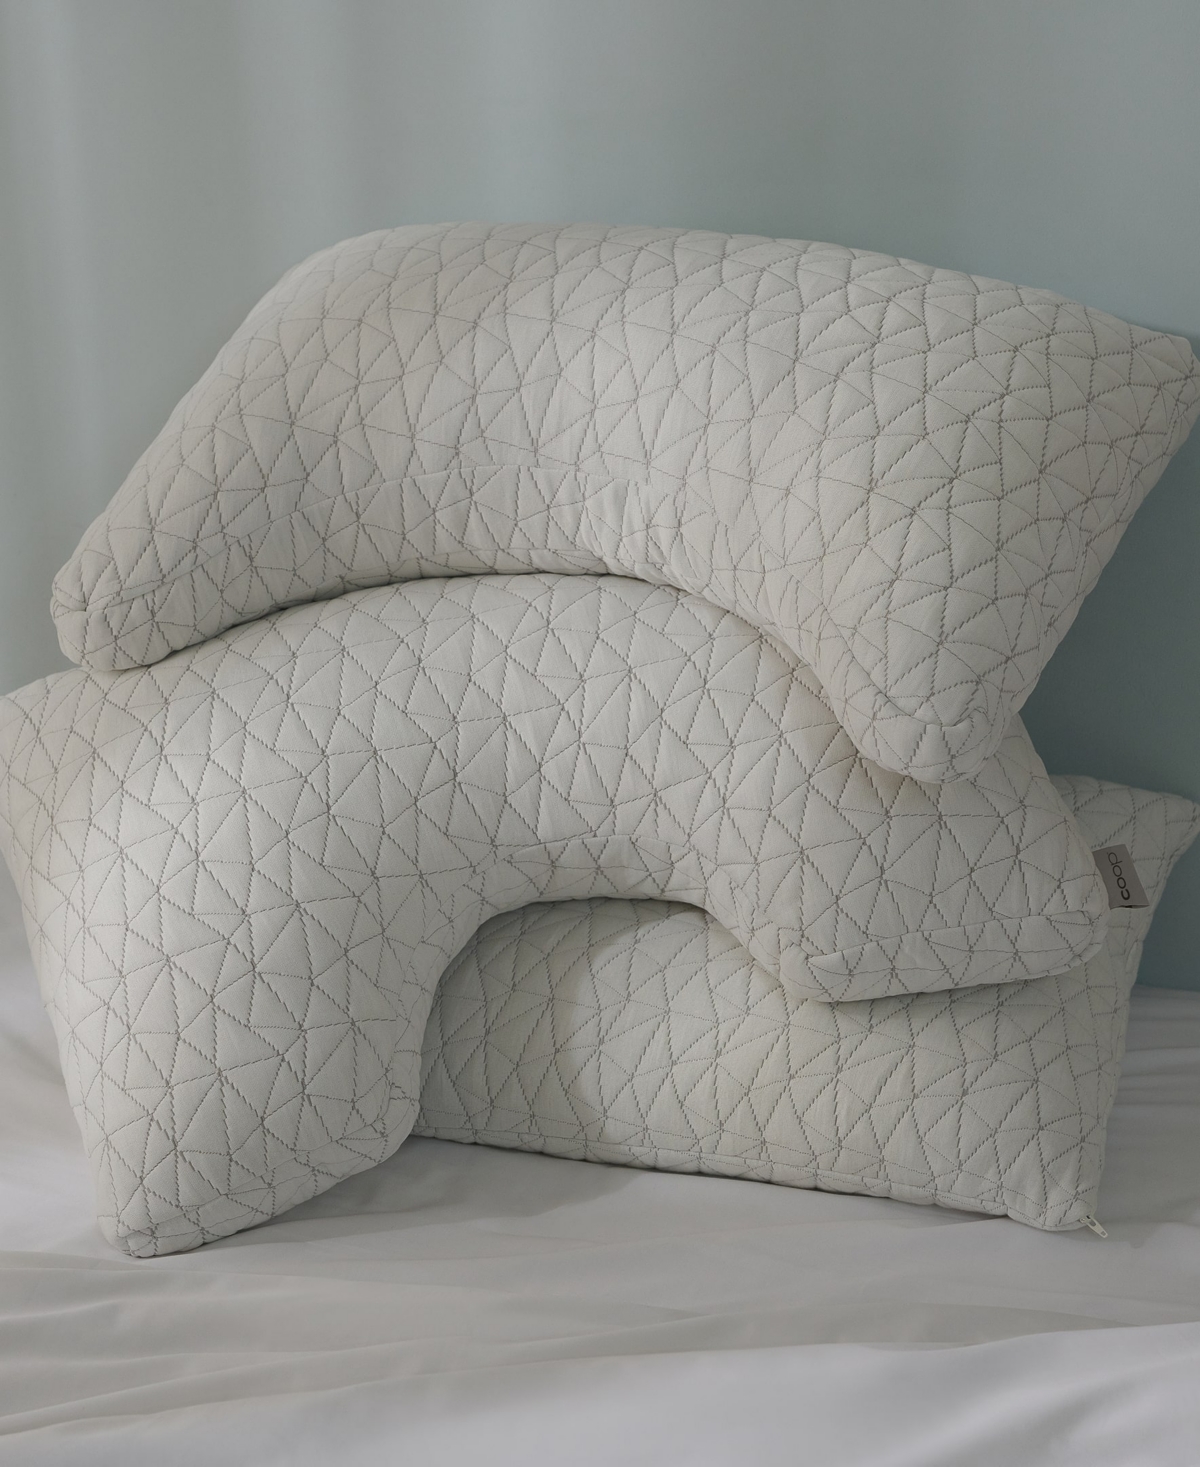 Shop Coop Sleep Goods The Original Crescent Adjustable Memory Foam Pillow, Queen In White